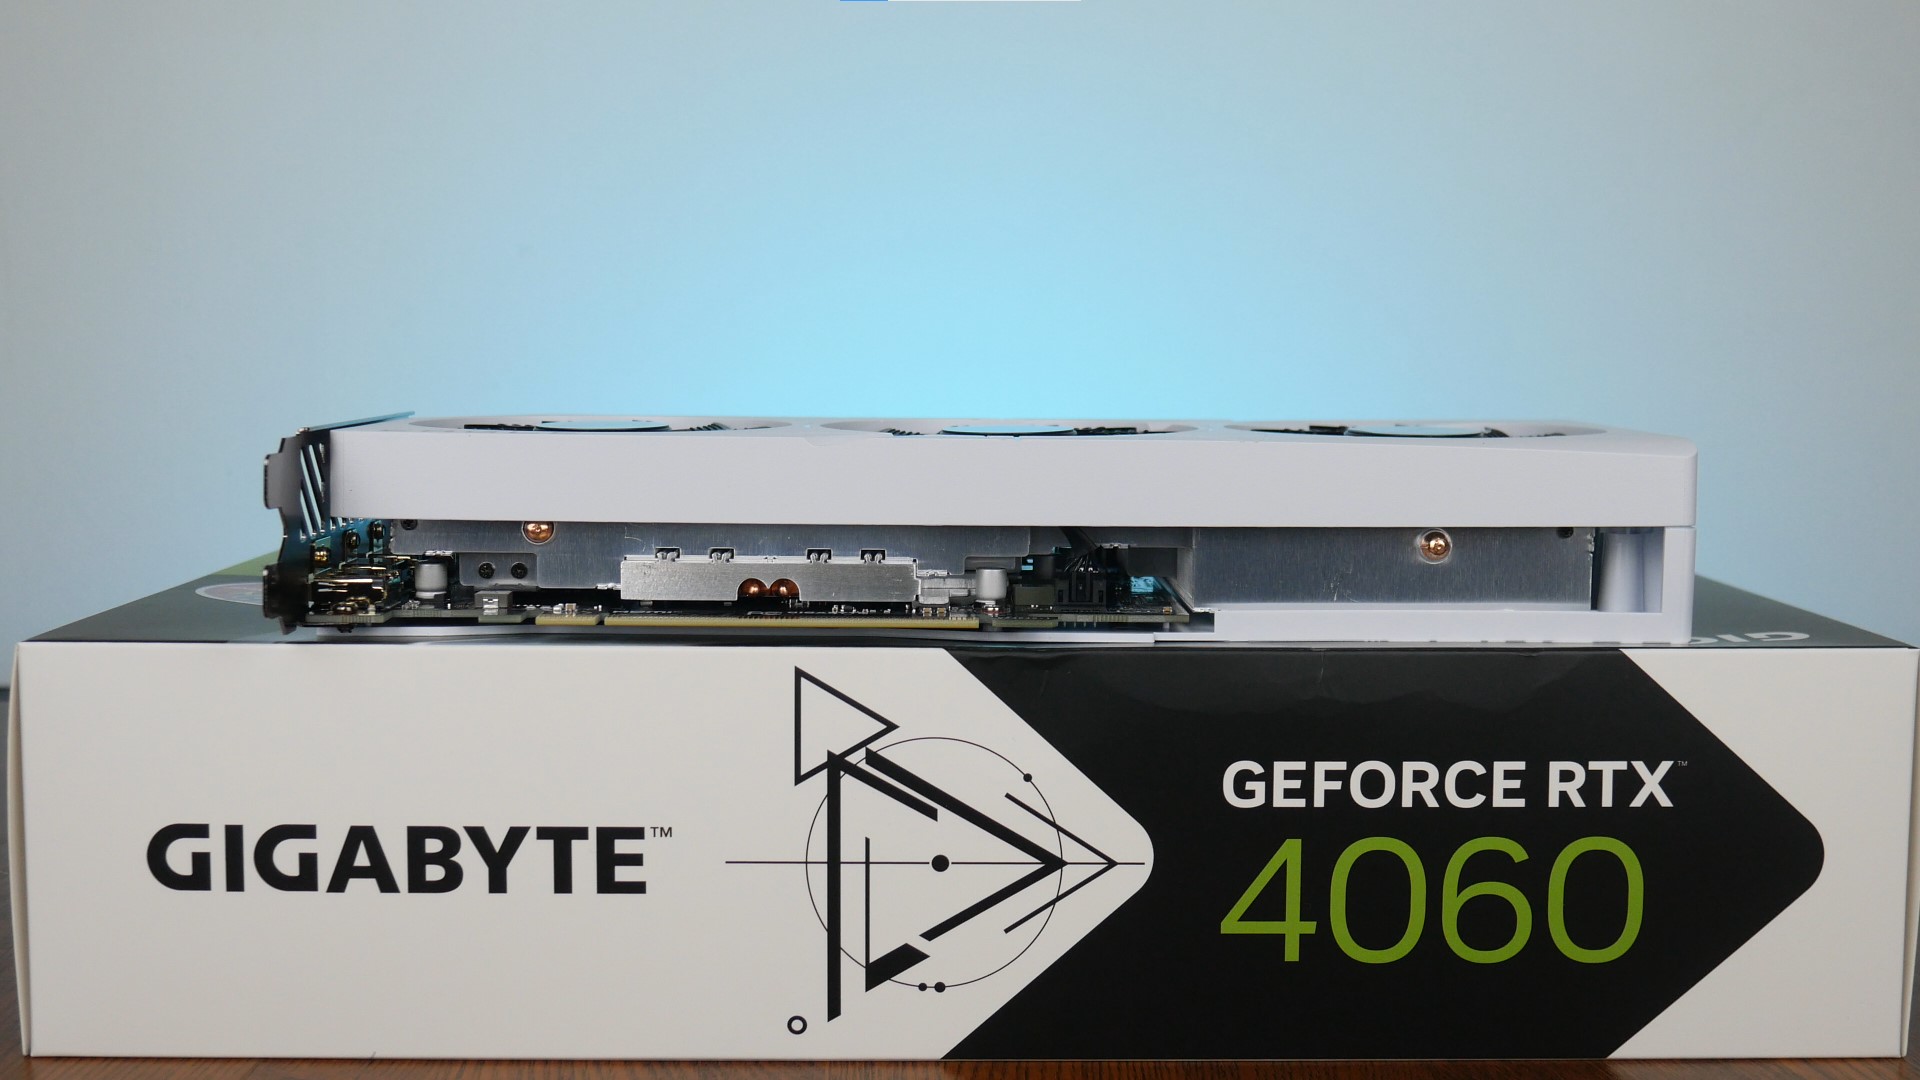 Gigabyte GeForce RTX 4060 EAGLE OC ICE 8G Aesthetics (4)